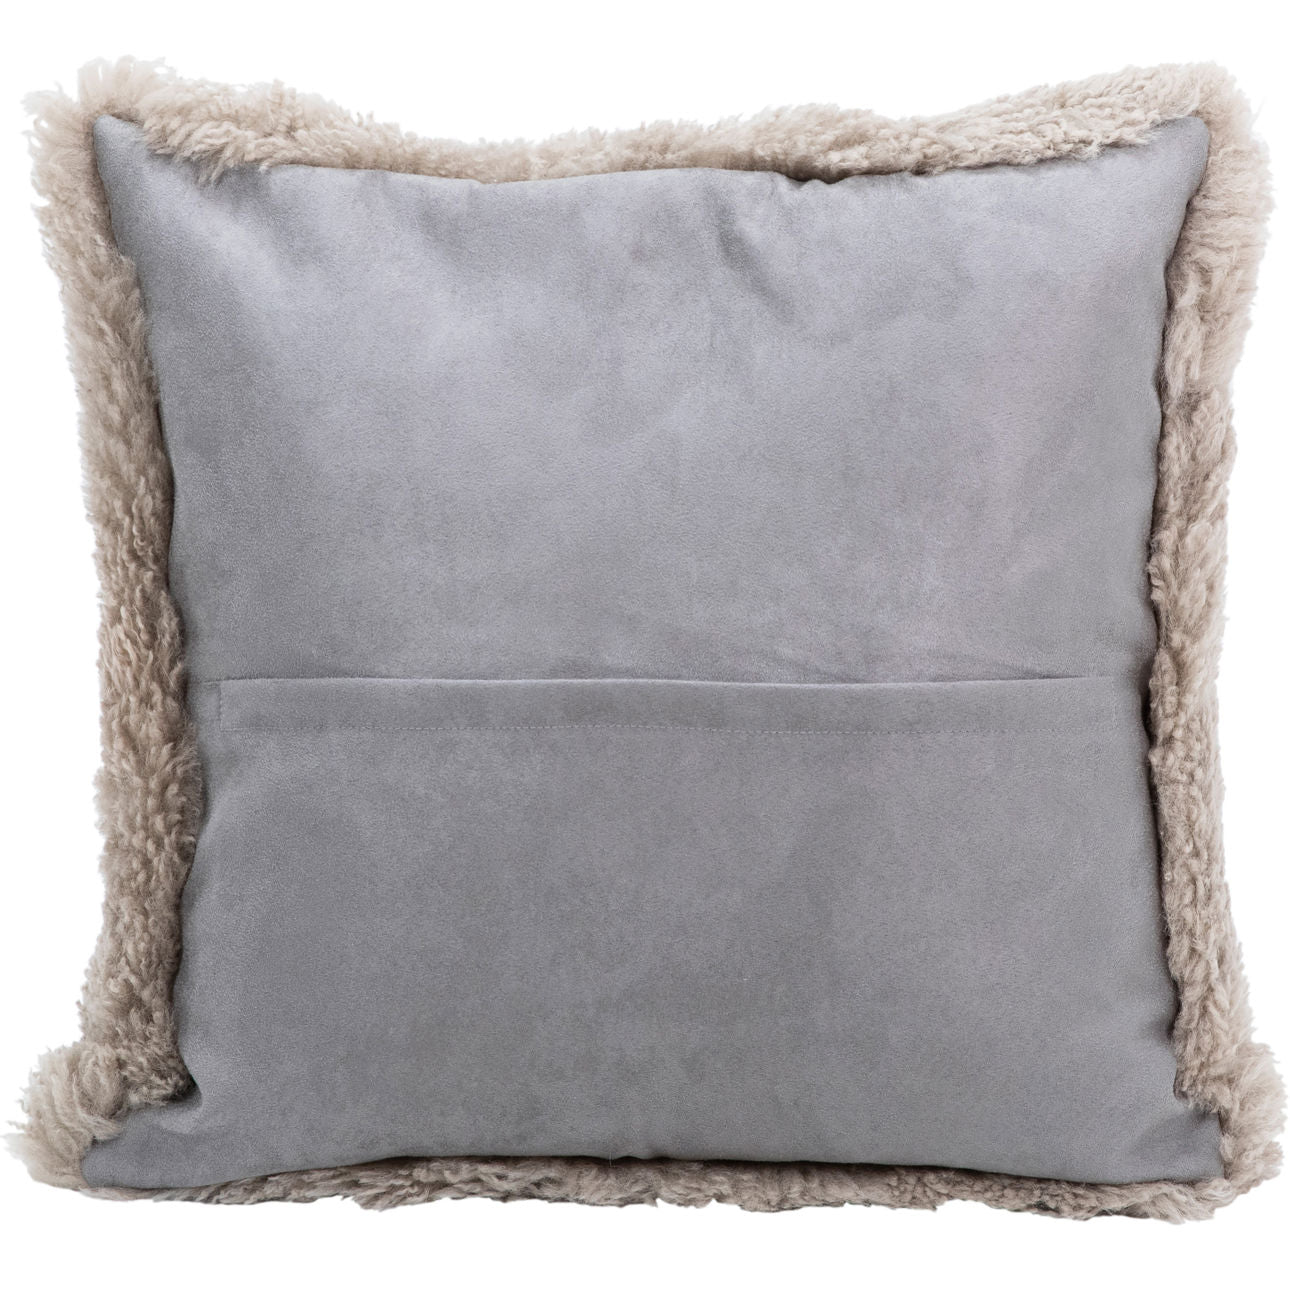 Kiwi Pillow